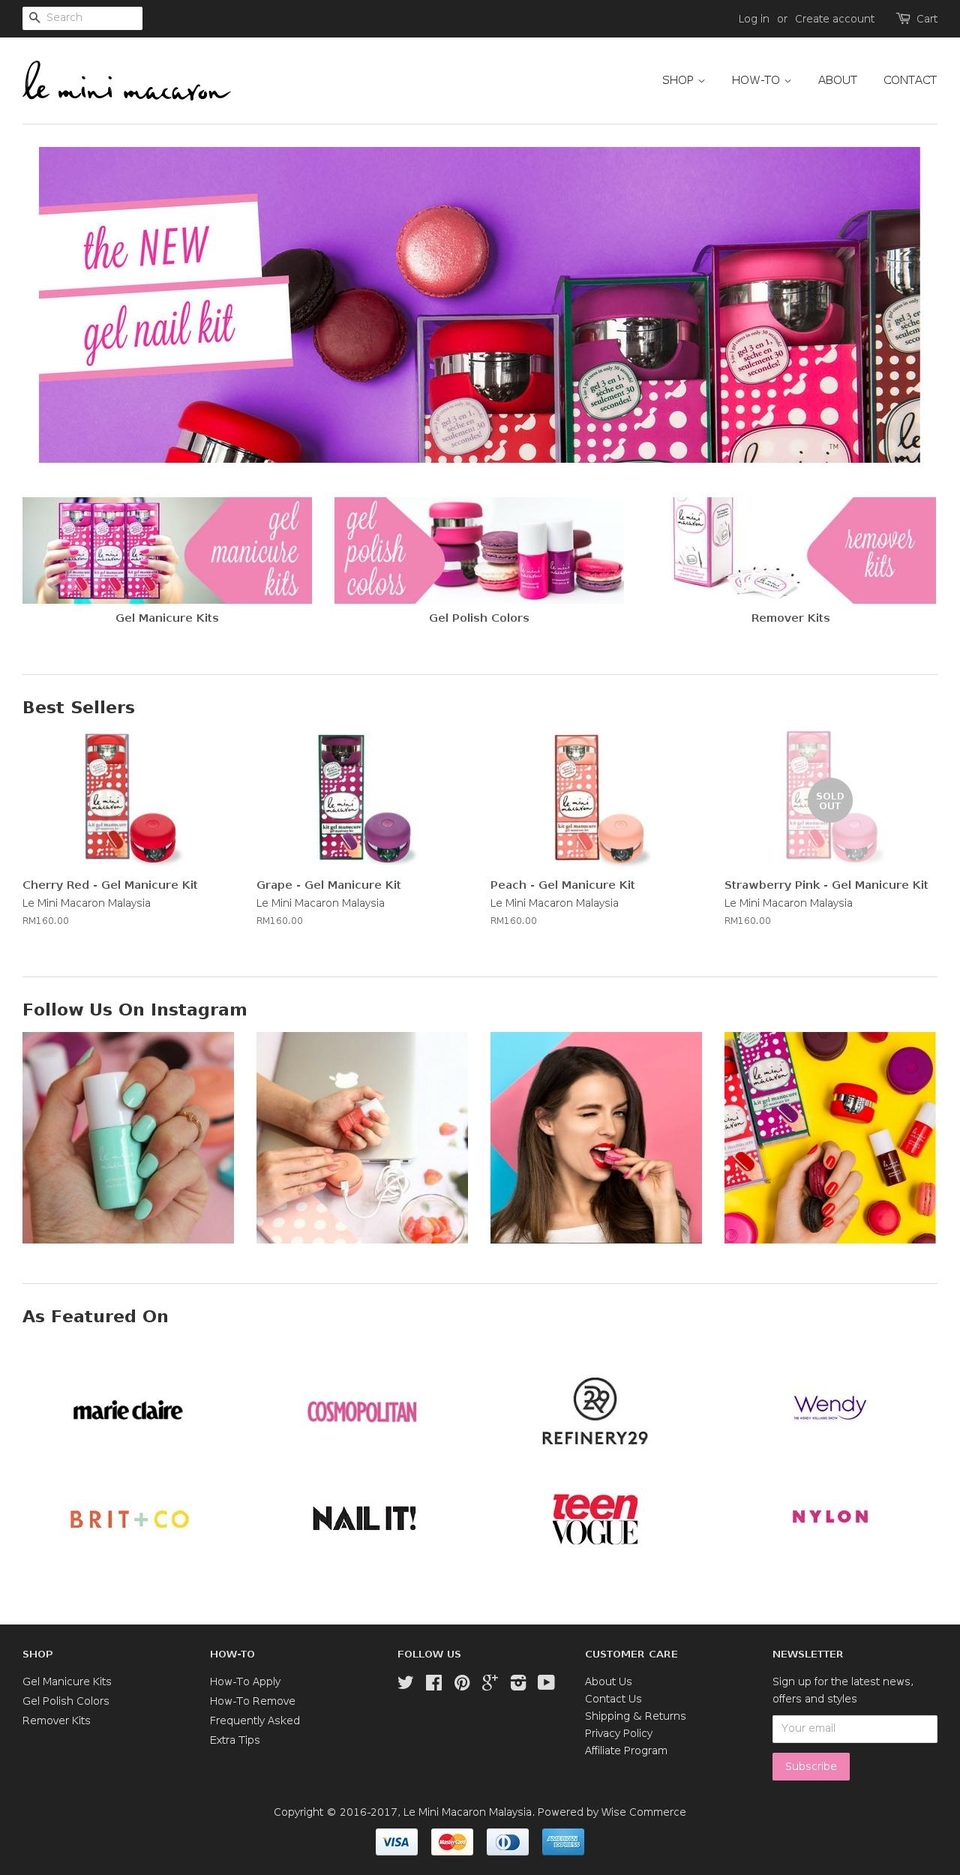 leminimacaron.com.my shopify website screenshot